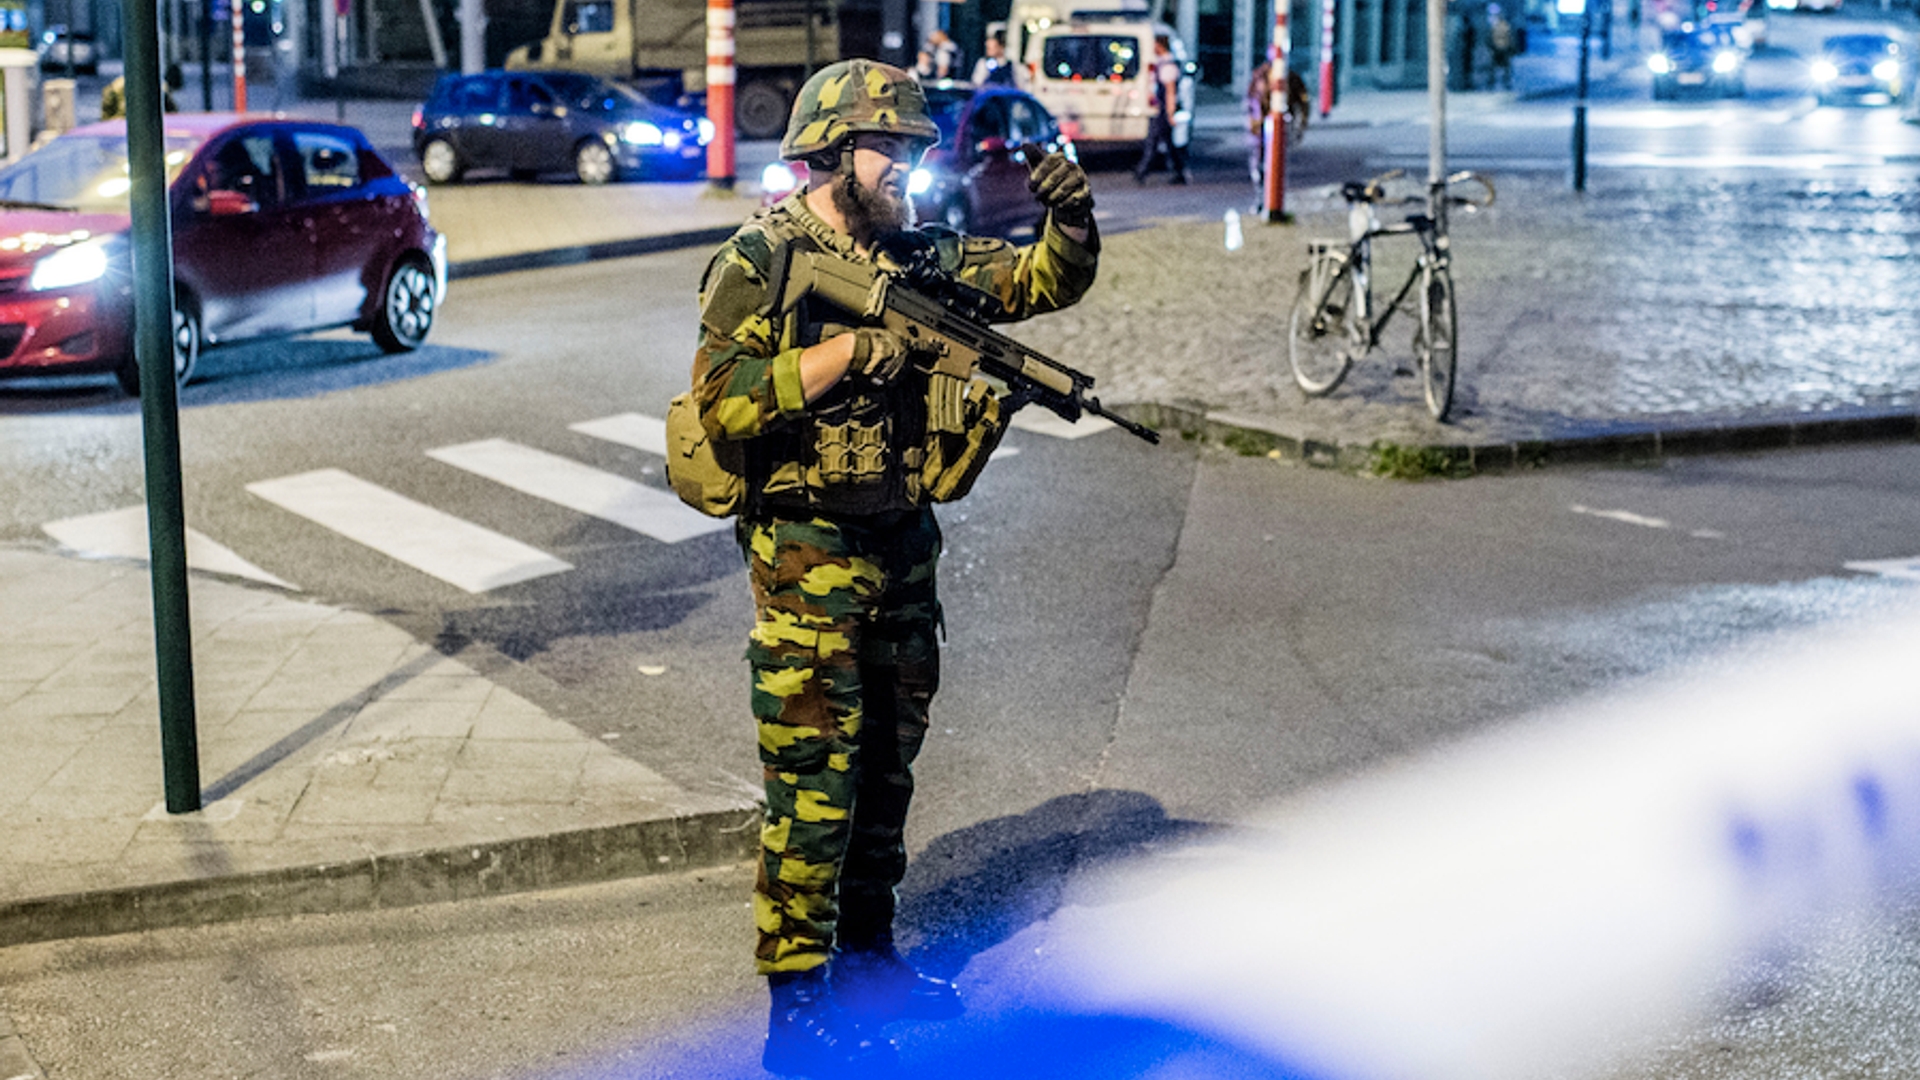 Politie pakt man met bomgordel in Brussel